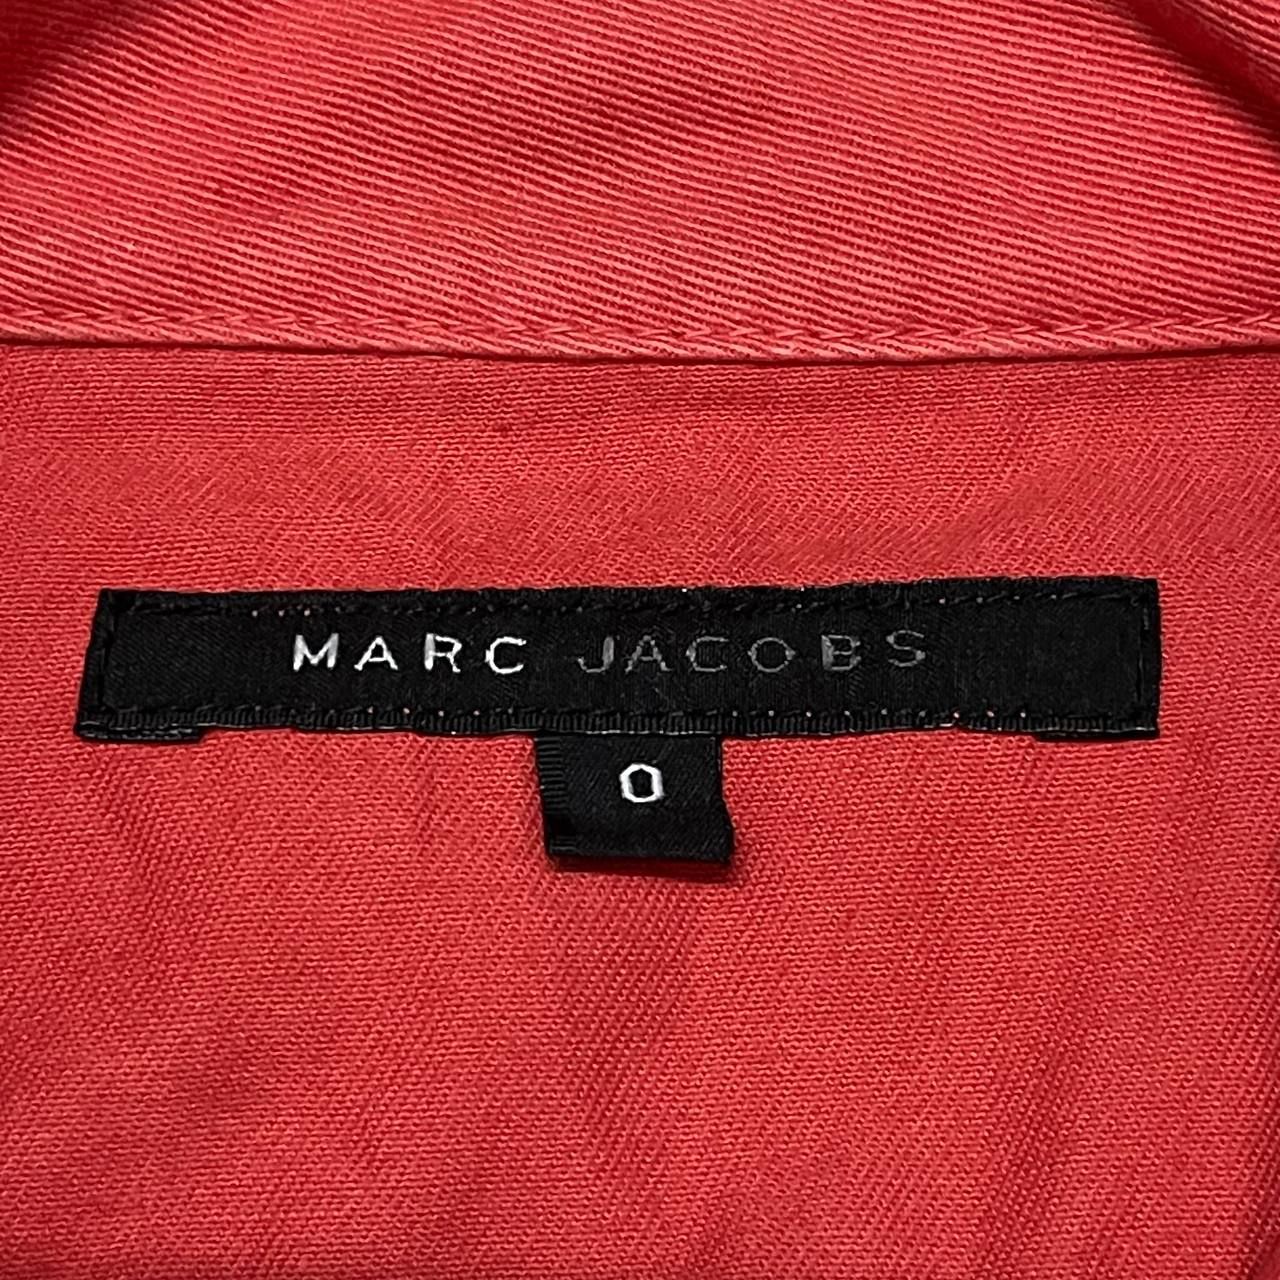 Marc Jacobs Long Jacket Short Sleeve - 6